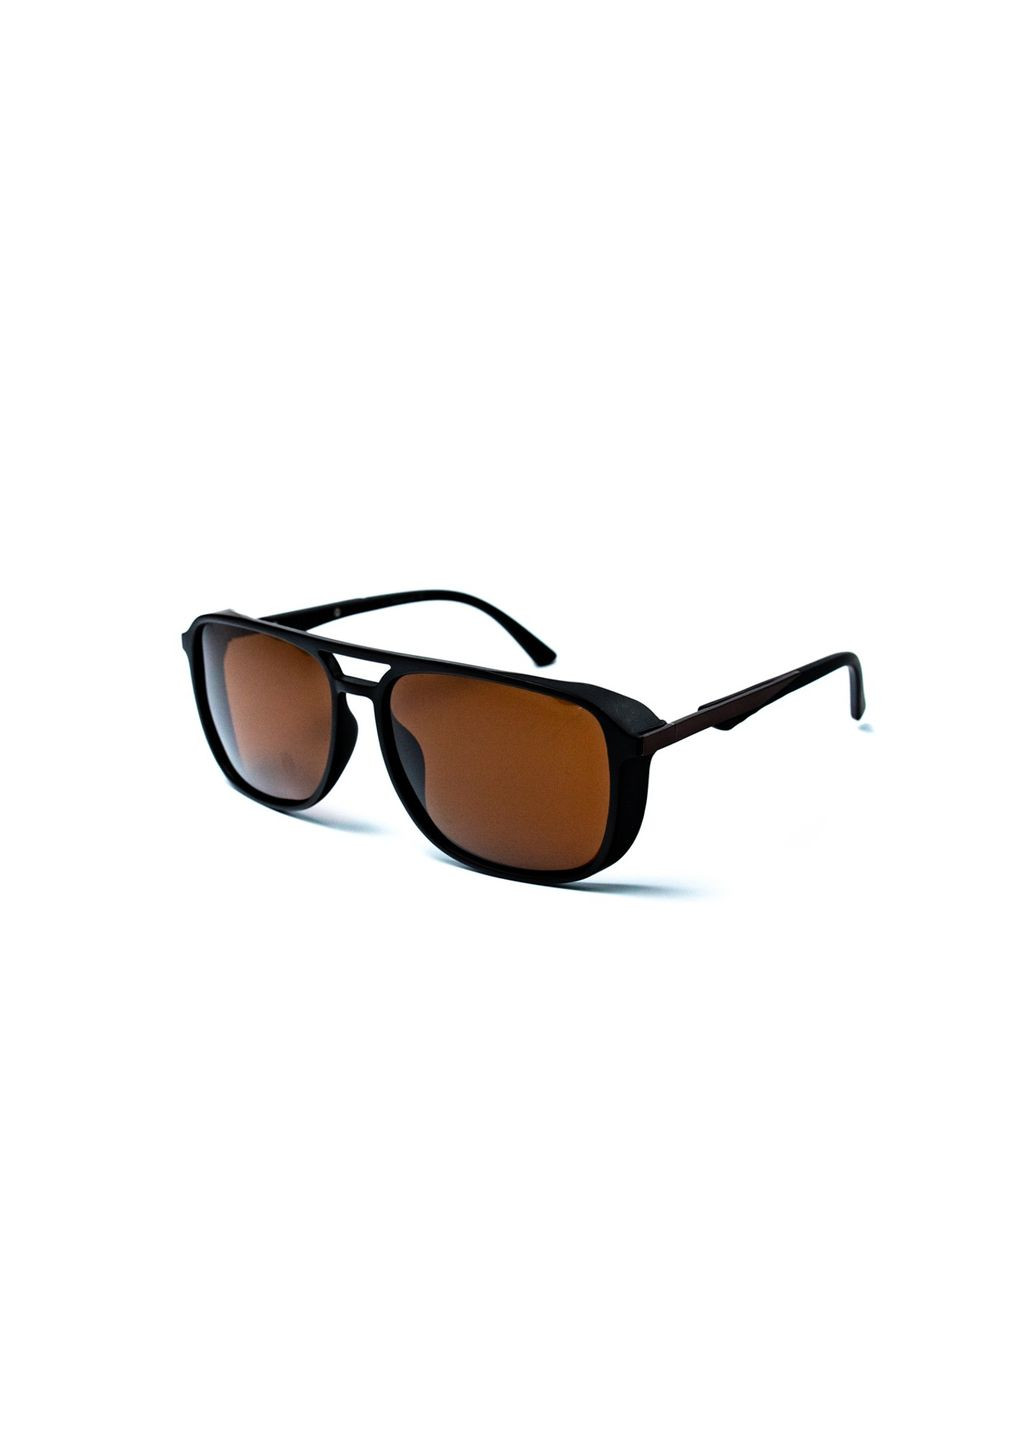 Солнцезащитные очки с поляризацией Фэшн мужские 428-805 LuckyLOOK 428-805м (291016201)